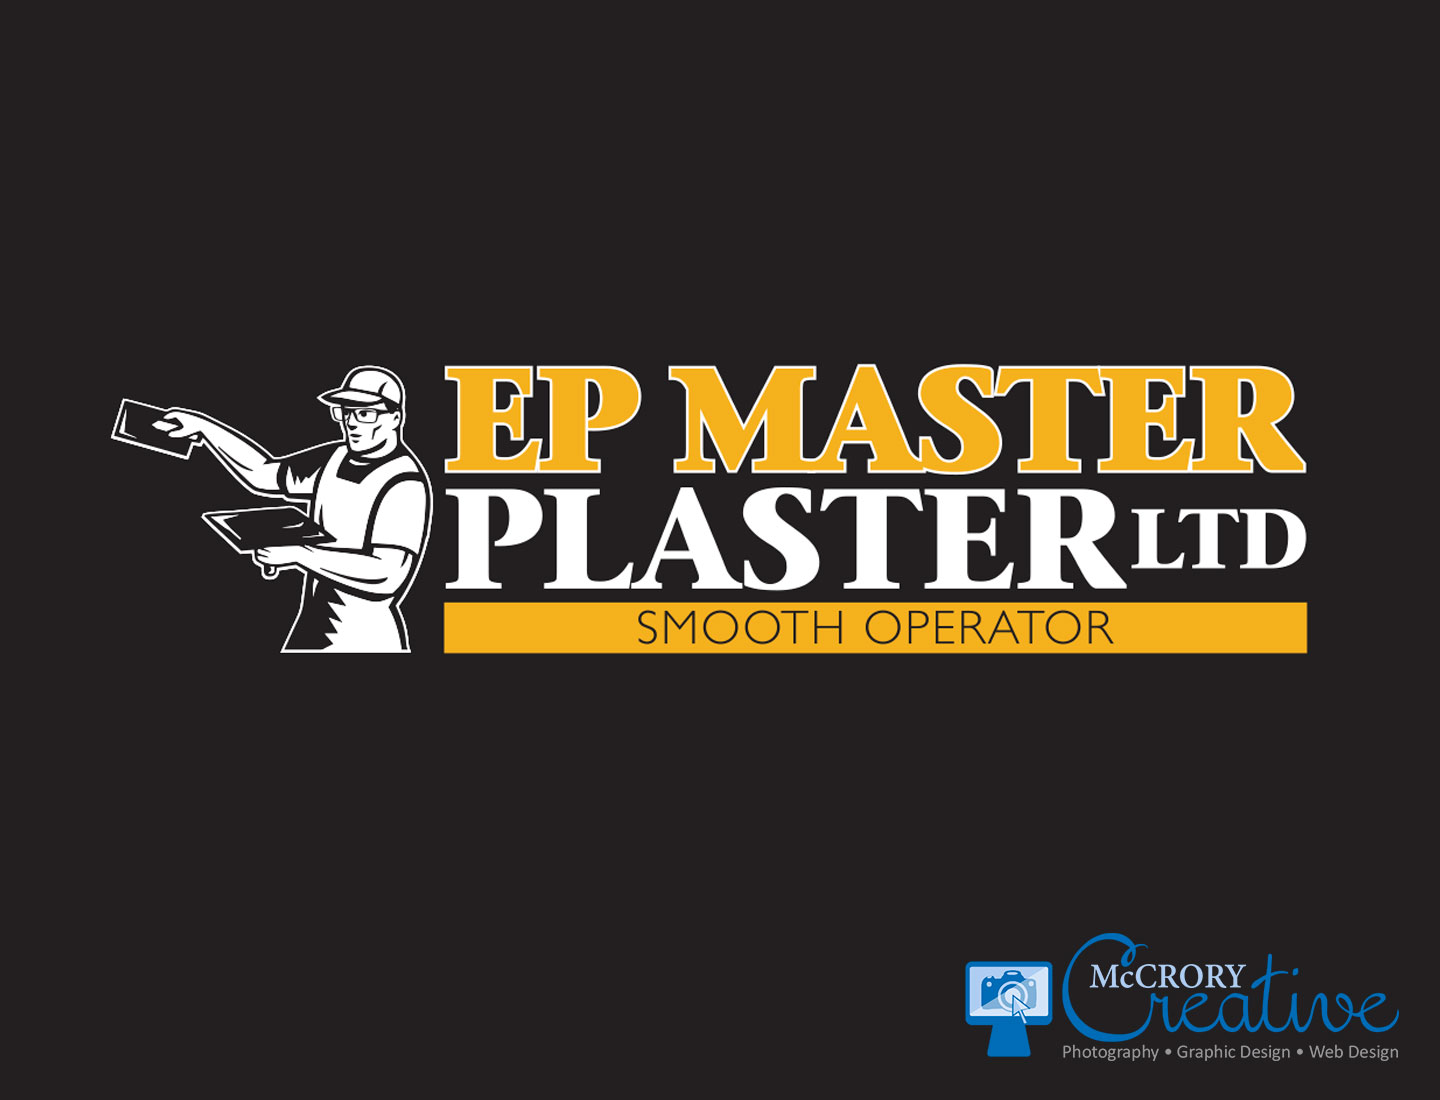 EP Master Plaster LTD